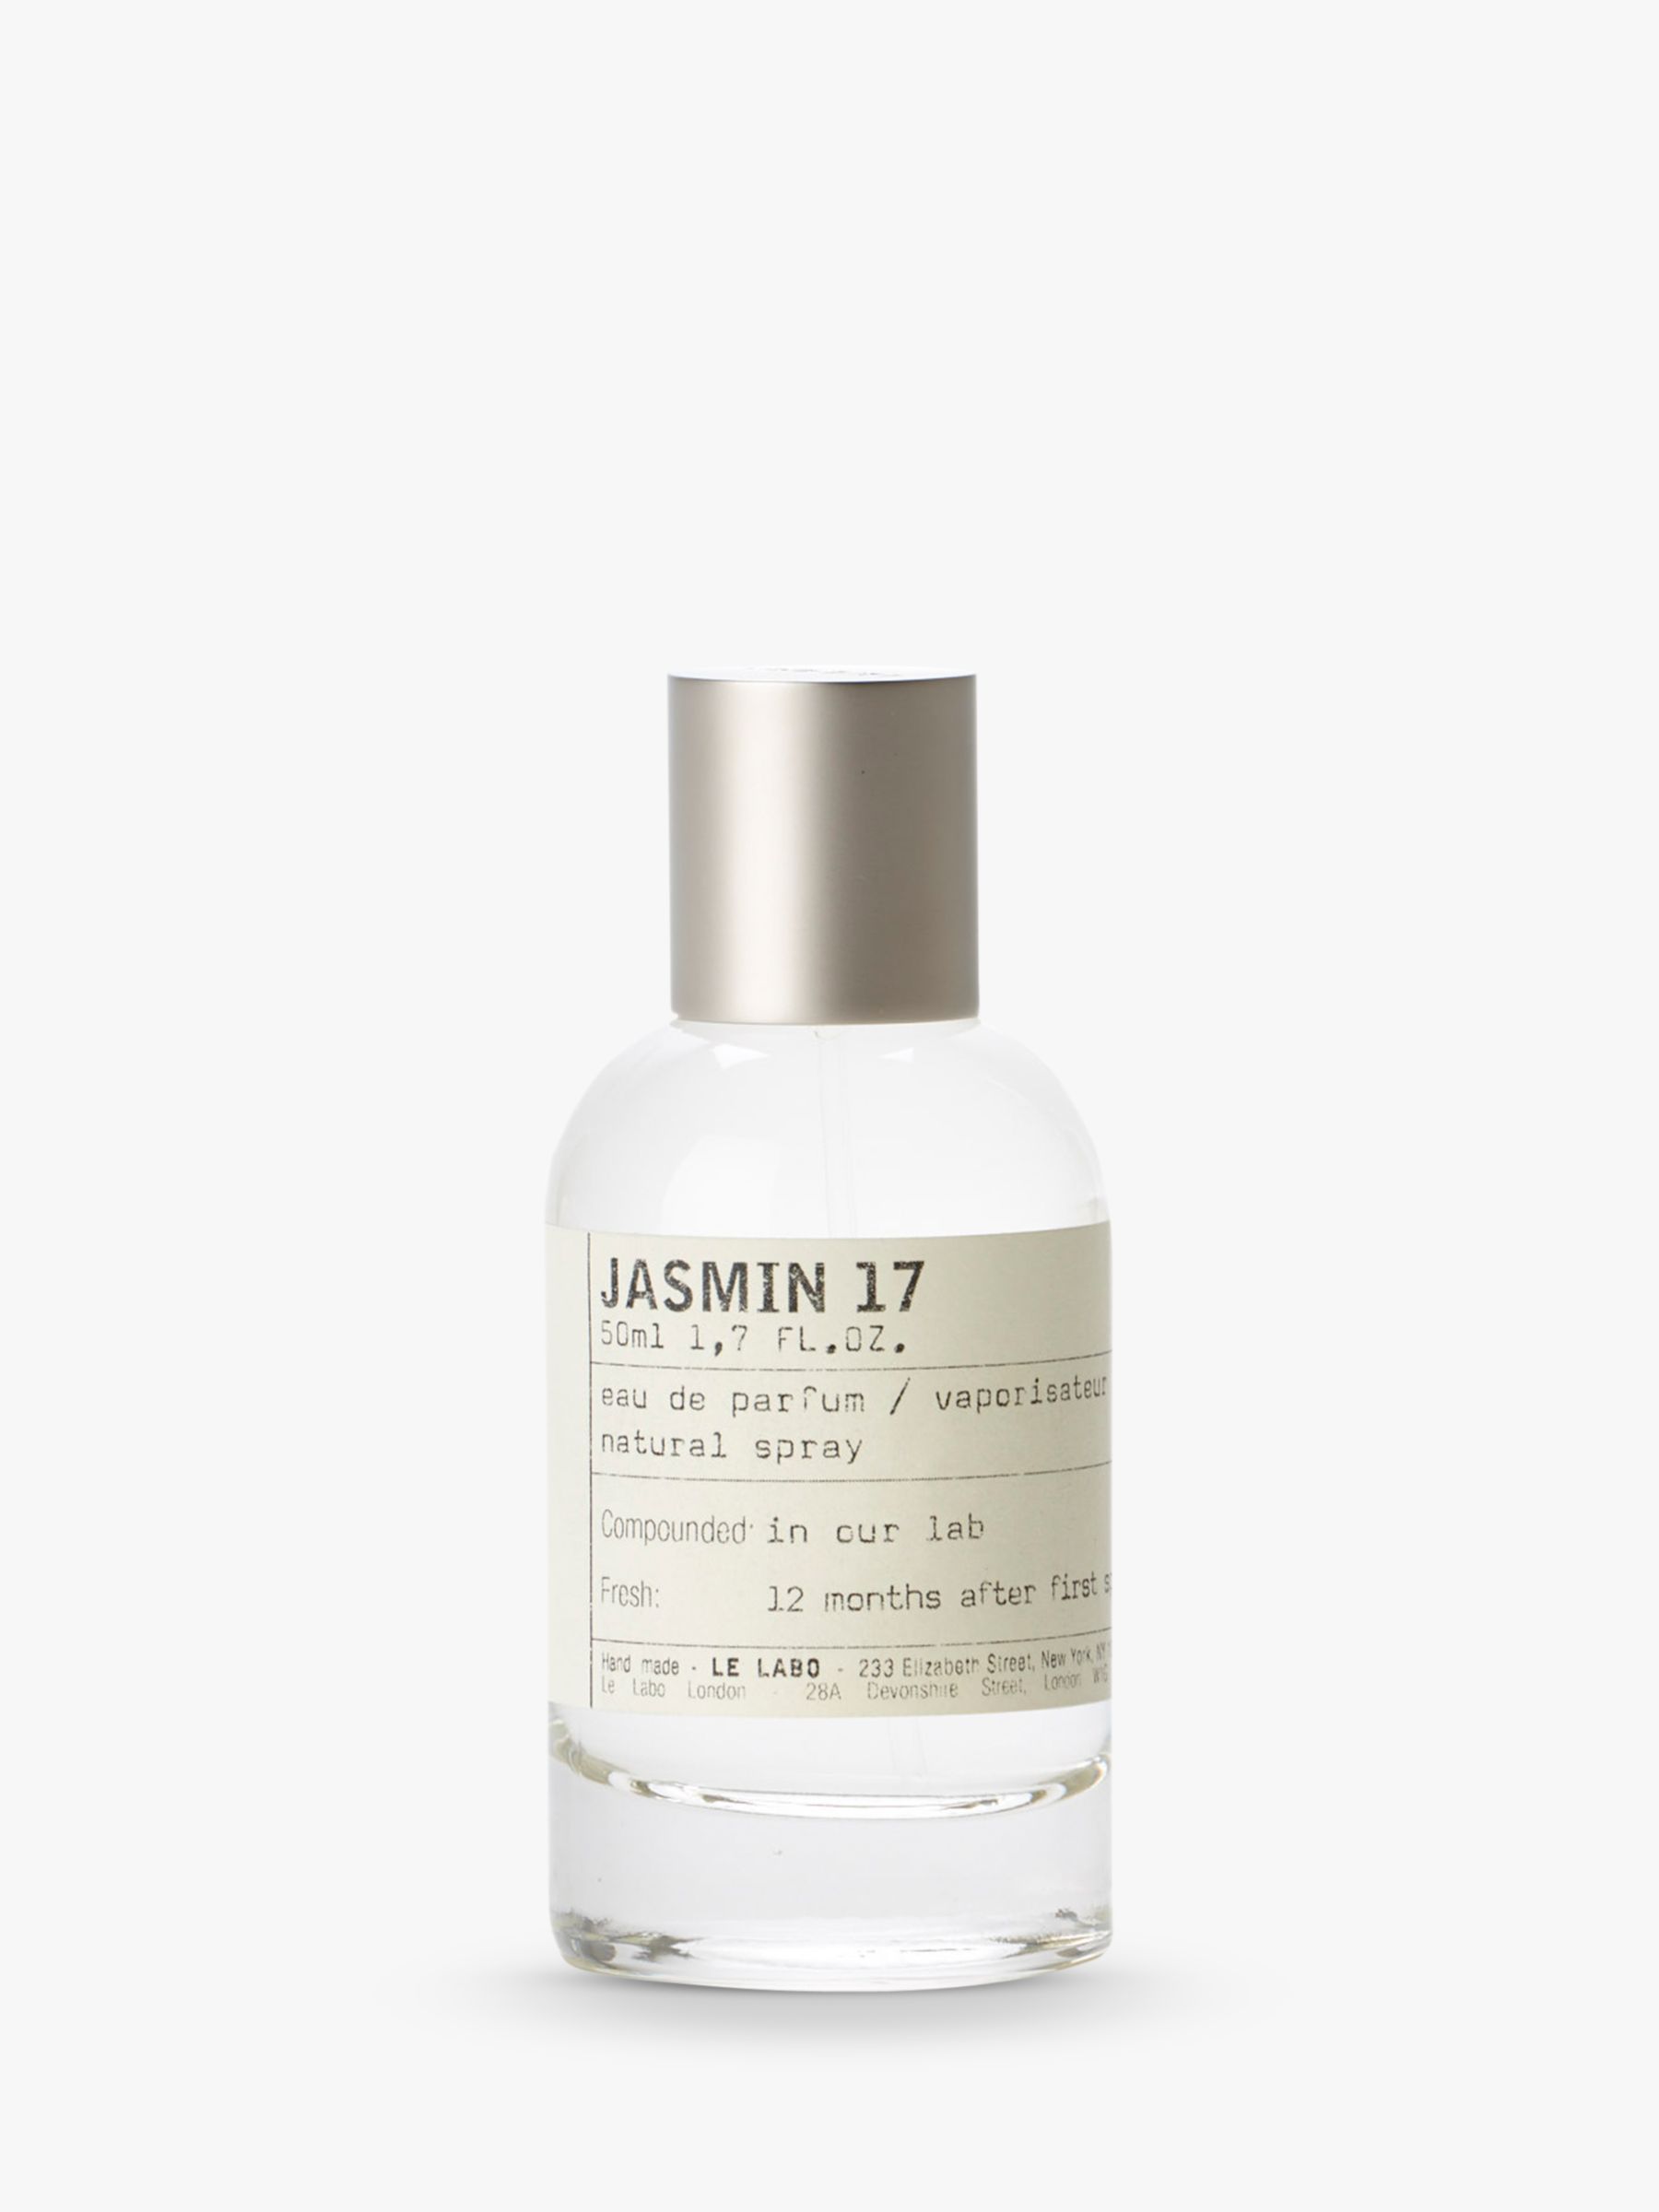 Le Labo Jasmin 17 Eau de Parfum, 50ml at John Lewis & Partners